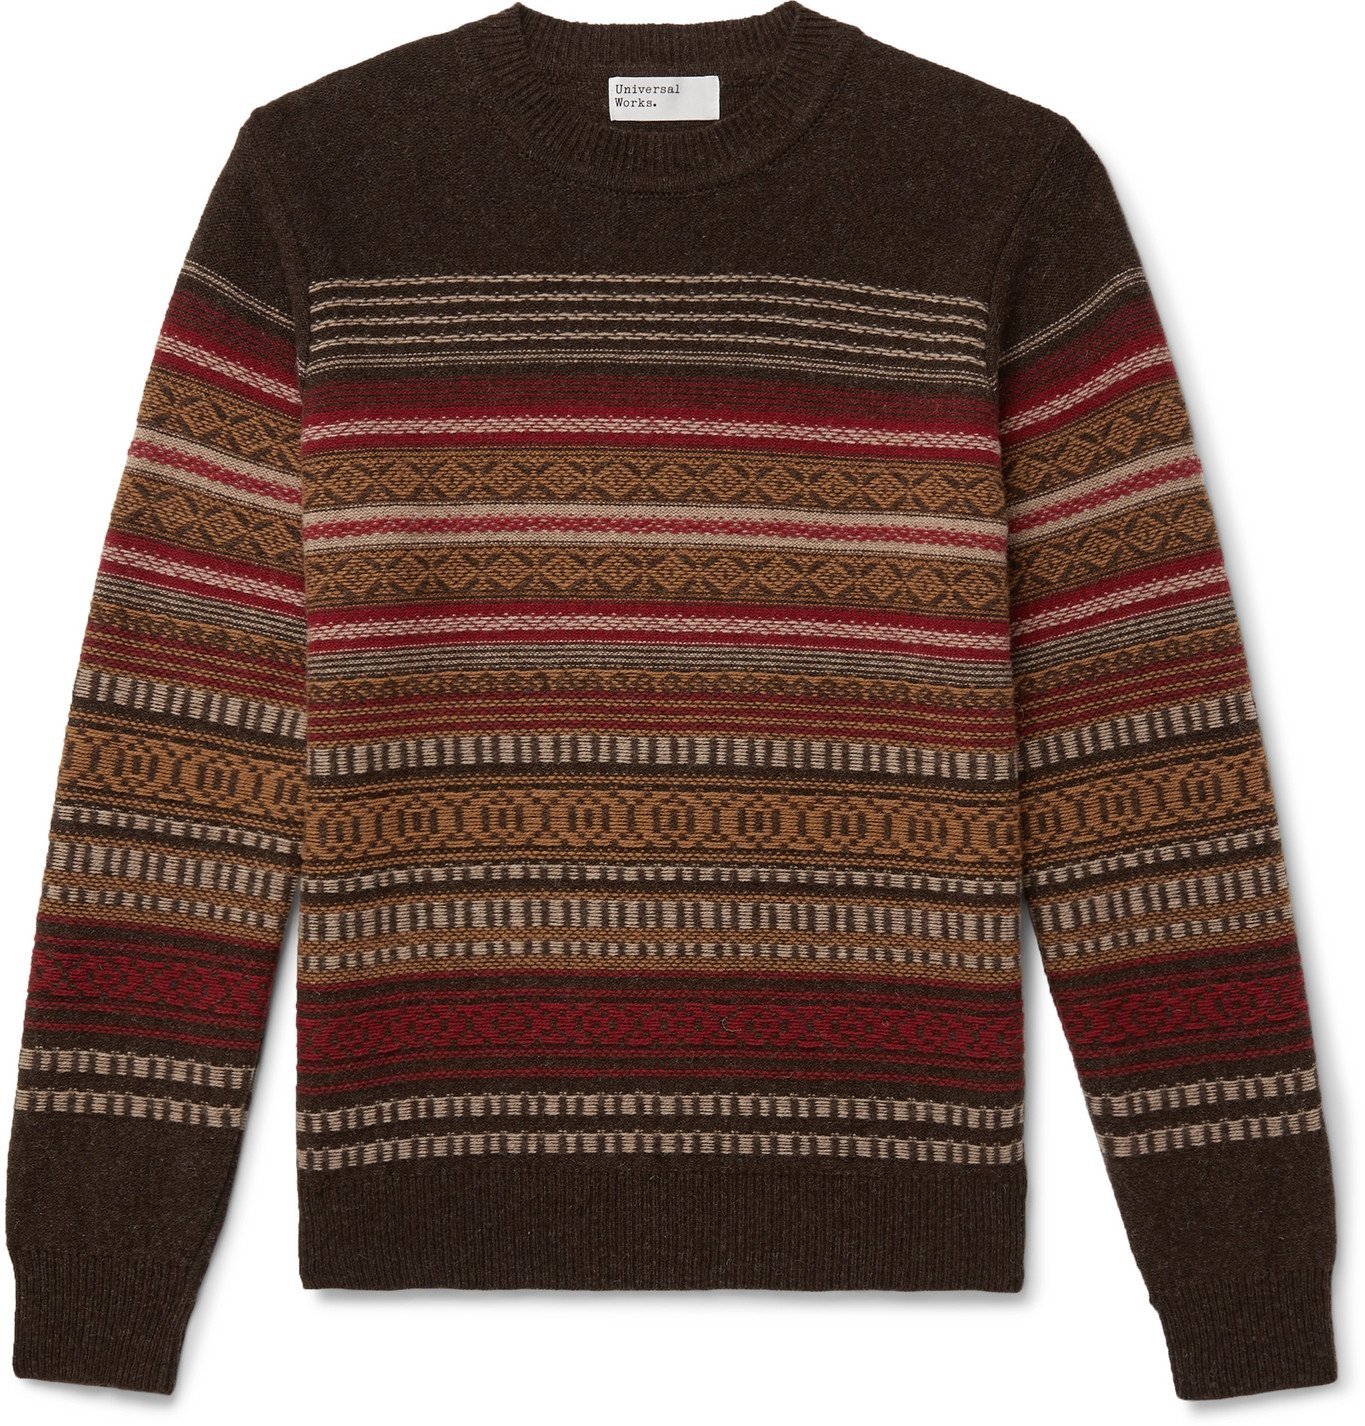 Universal Works - Fair Isle Wool-Blend Sweater - Brown Universal Works